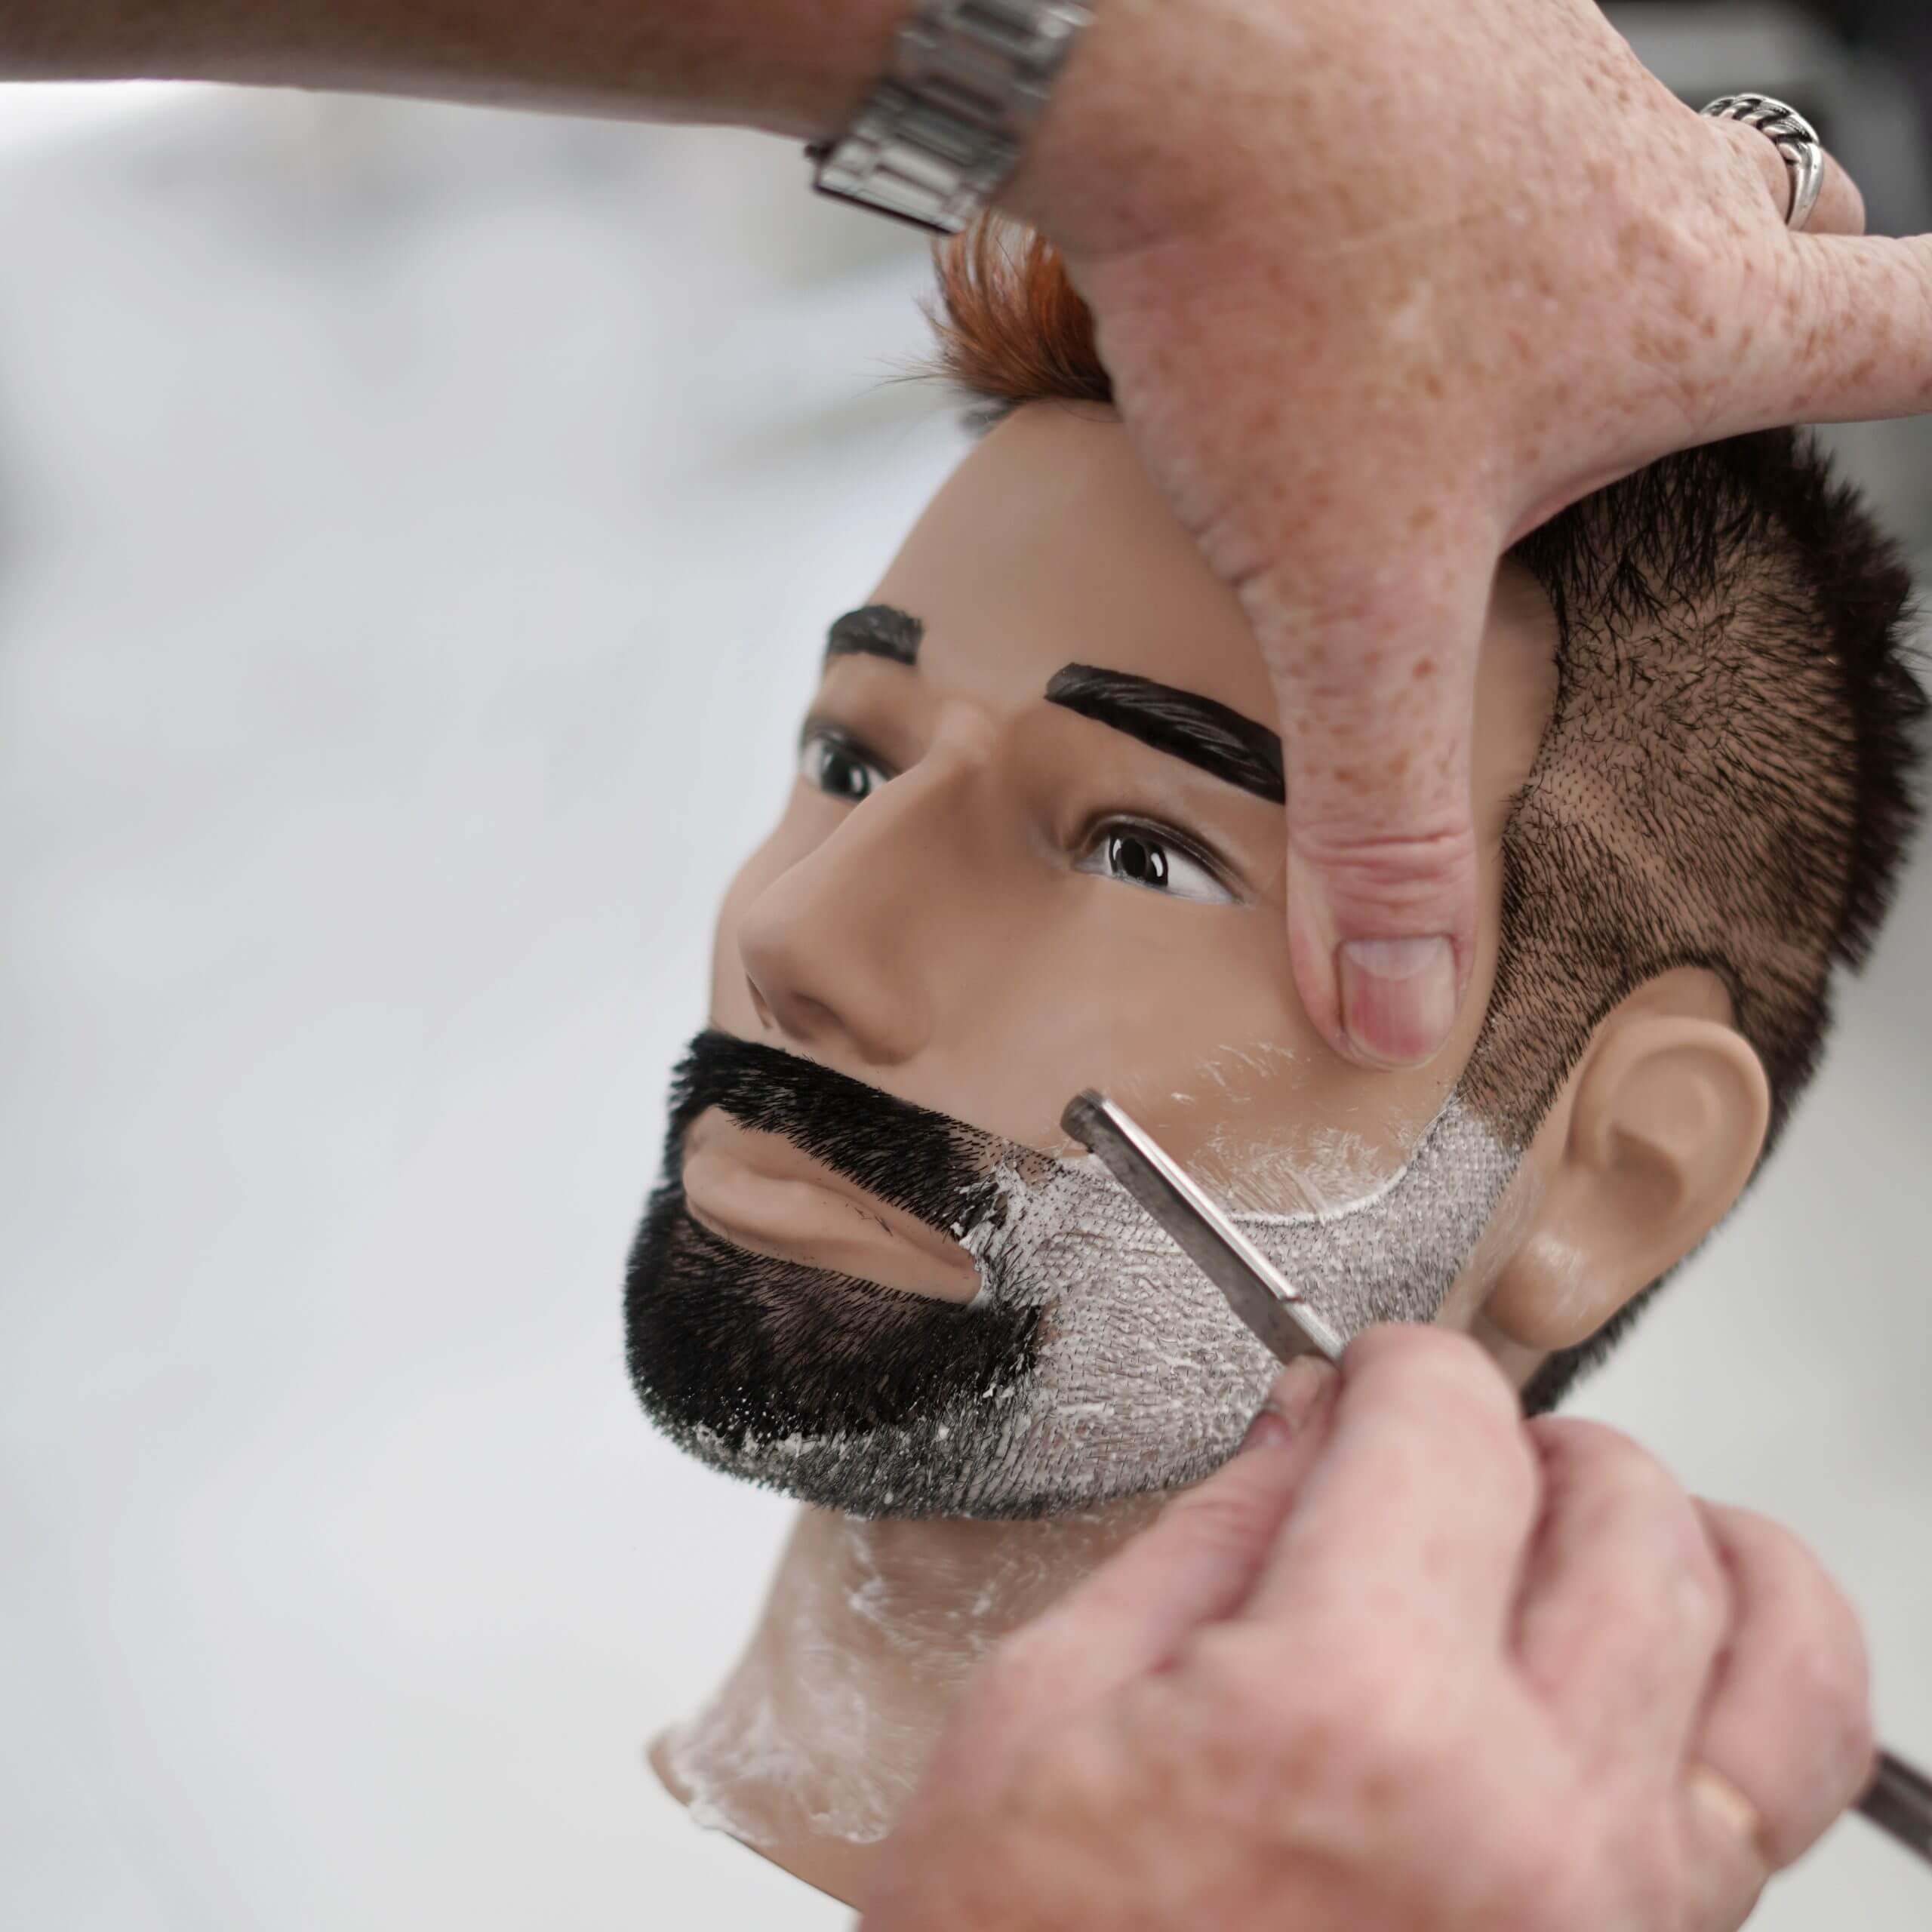 Показываем как ровнять бороду опасной бритвой